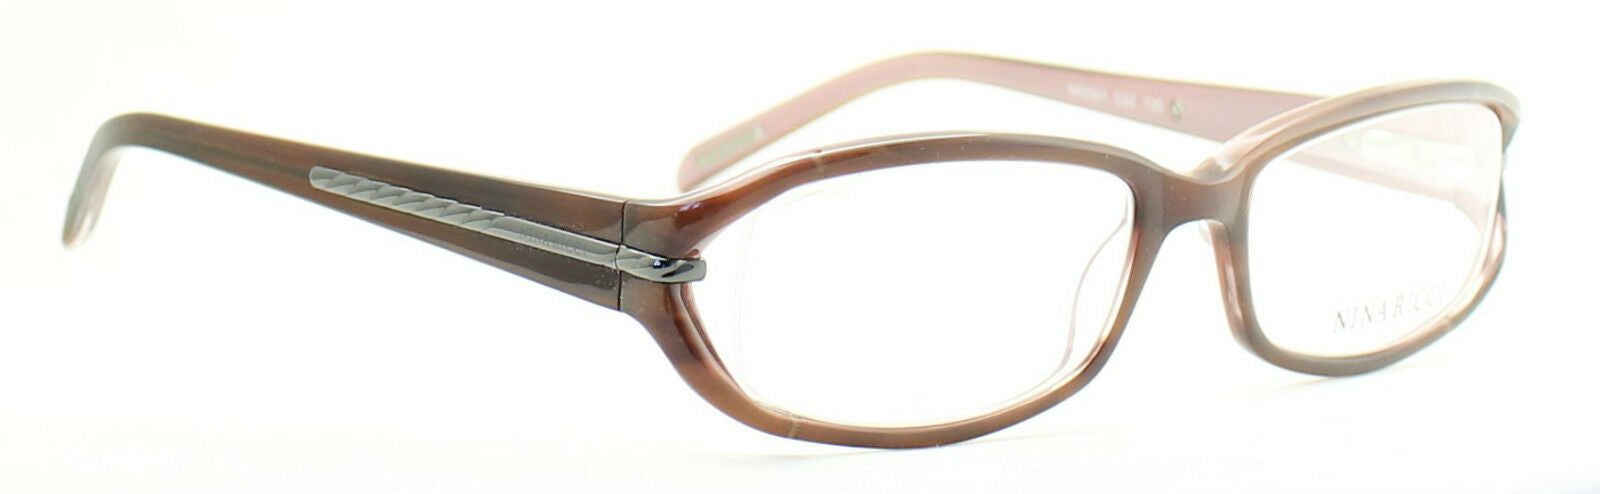 NINA RICCI NR2561 C02 Eyewear FRAMES RX Optical Eyeglasses Glasses BNIB TRUSTED